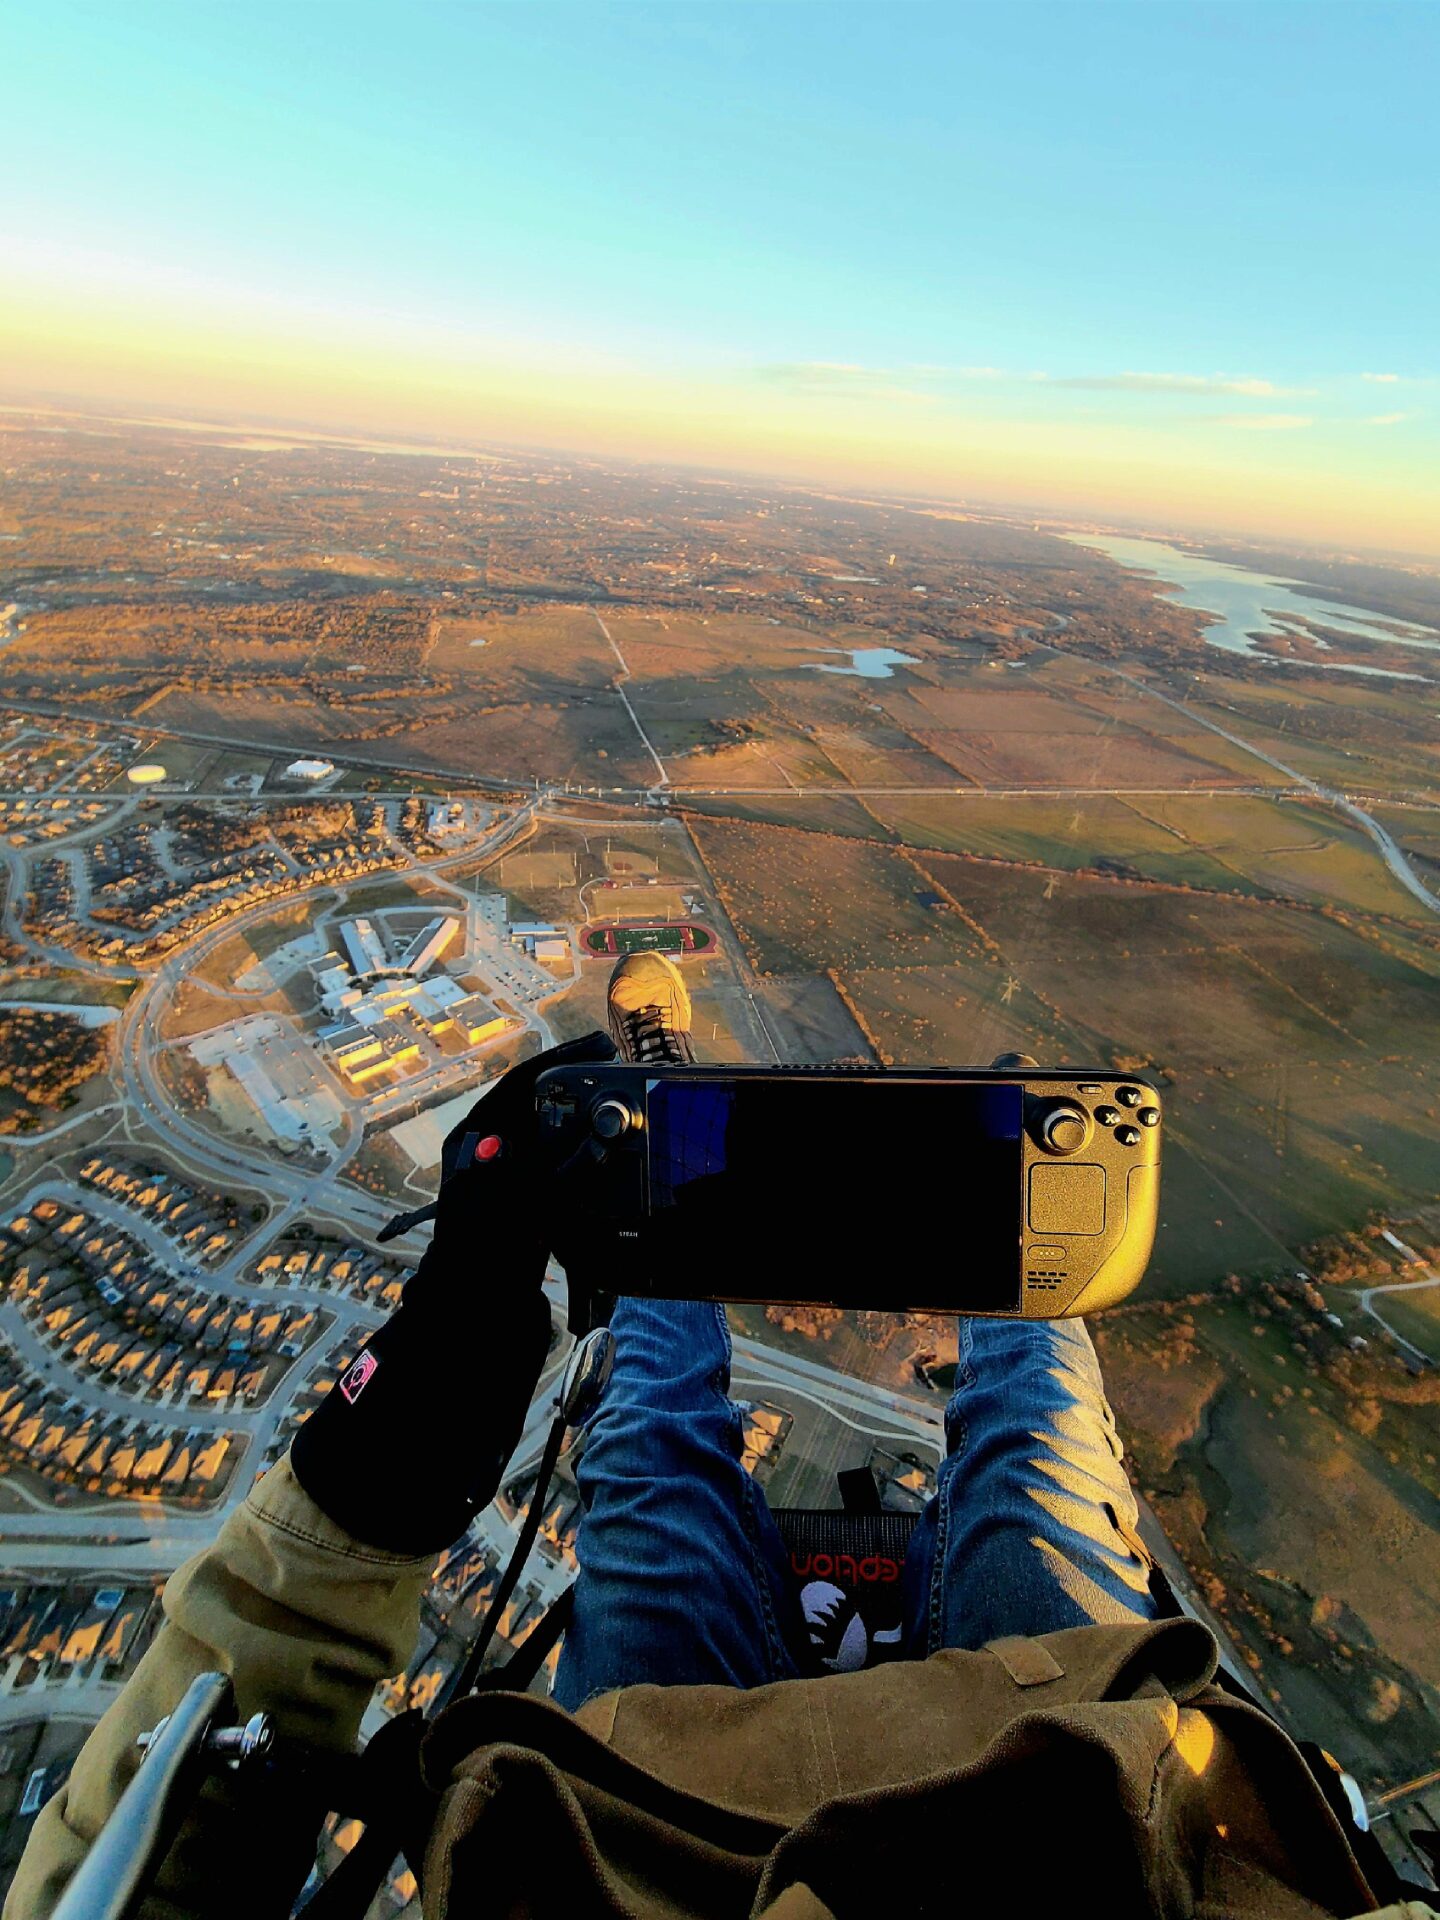 海外動力飛行傘玩家分享自2500呎高空手持Steam deck照片 - 電腦王阿達